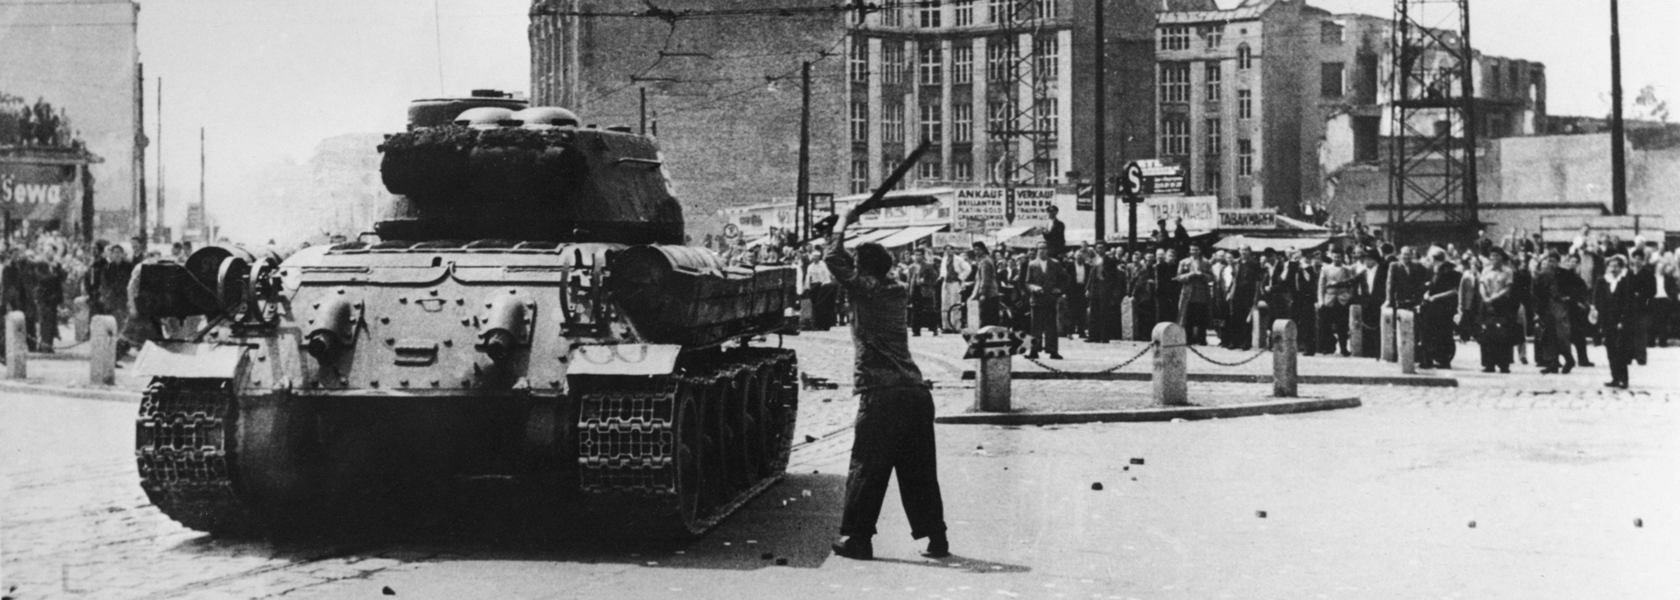 Volksaufstand vom 17. Juni 1953 mit Panzern und Demonstranten in Berlin